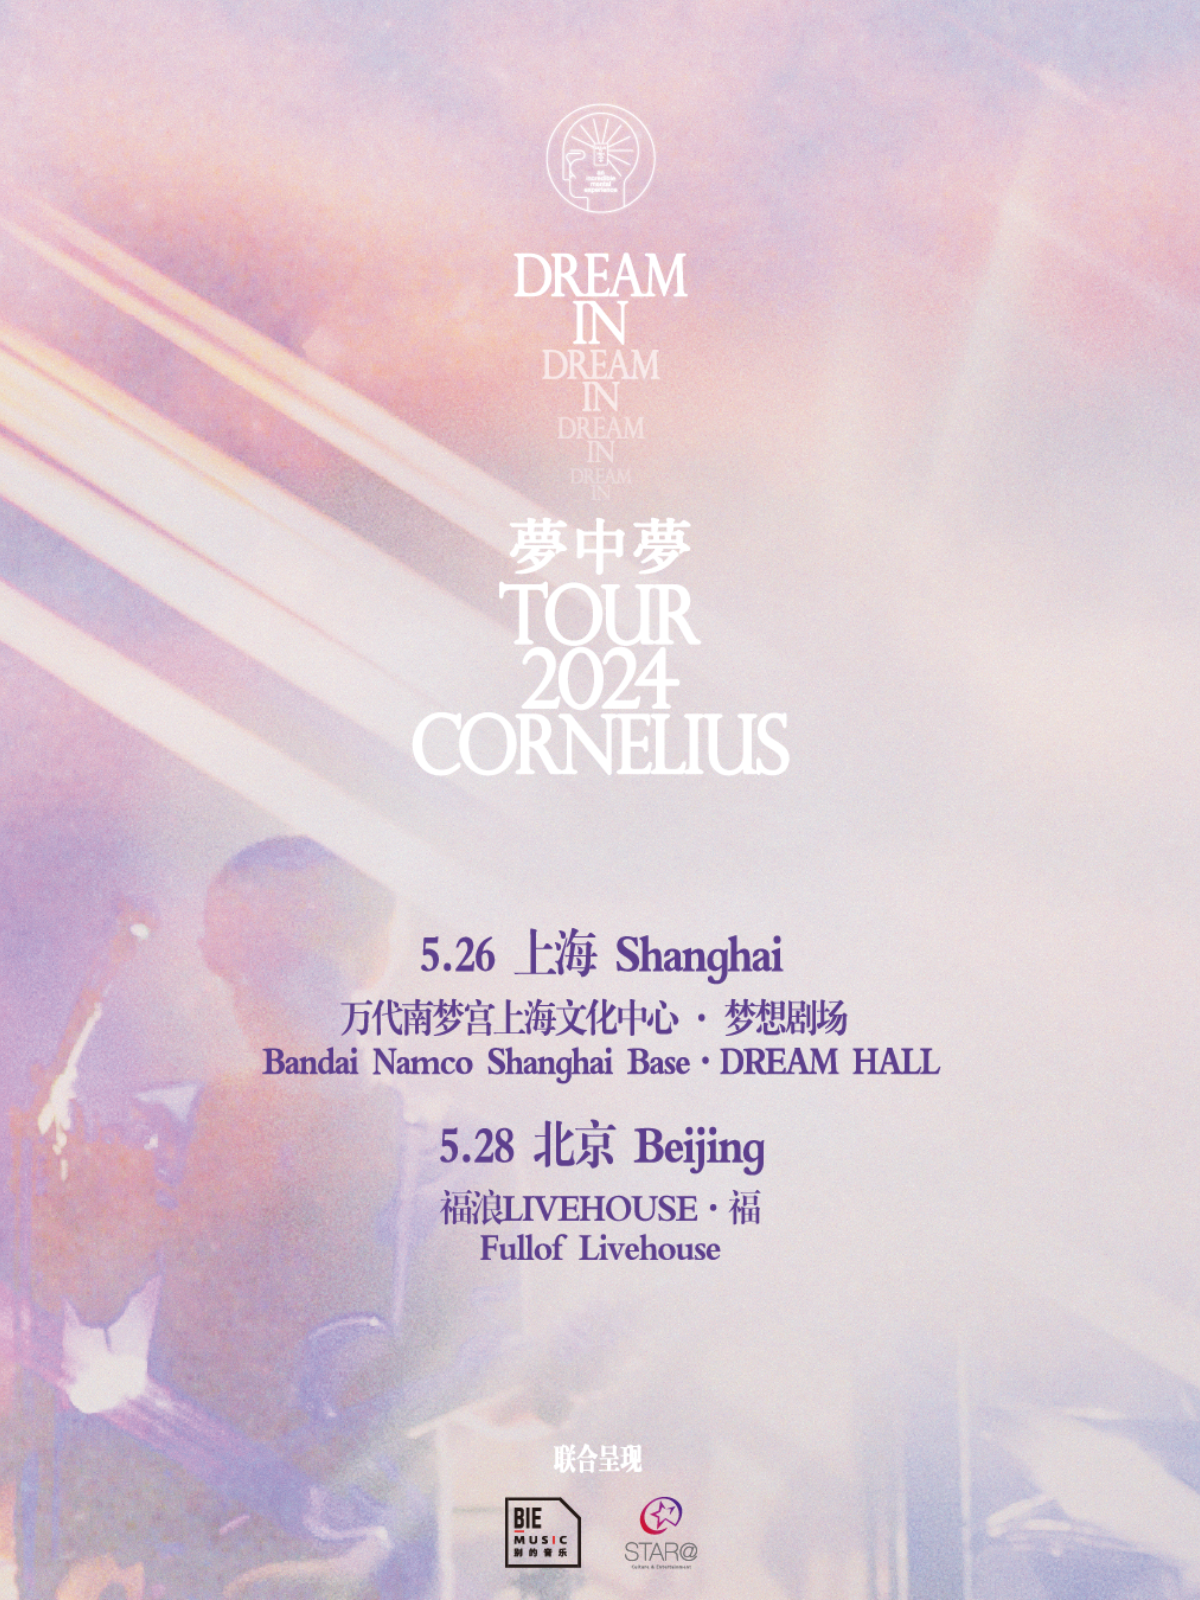 [上海]Cornelius “梦中梦” 2024巡演 LVH